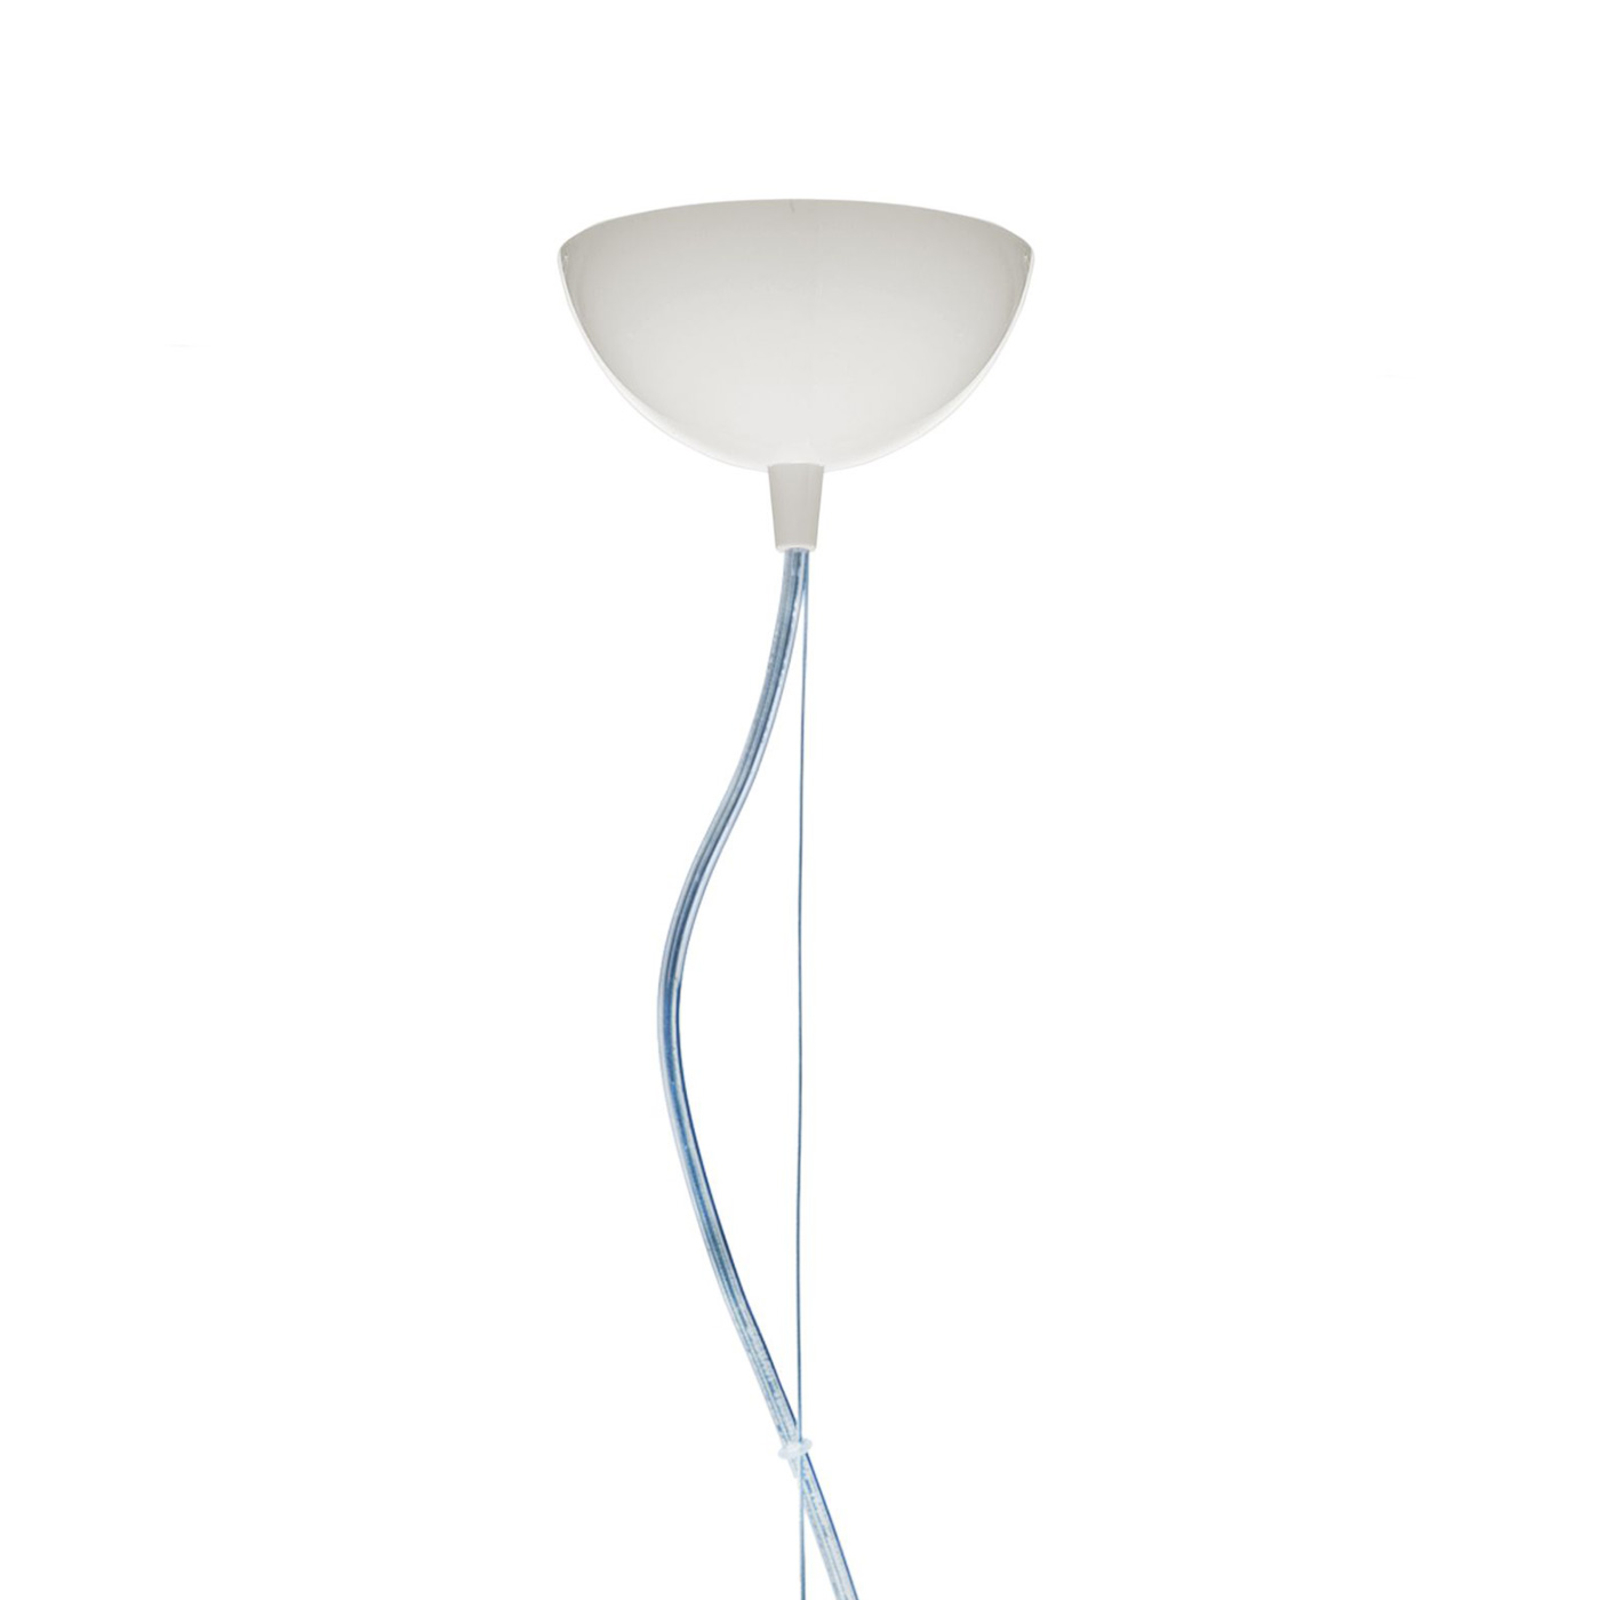 Kartell FL/Y - LED pendant light, matt white